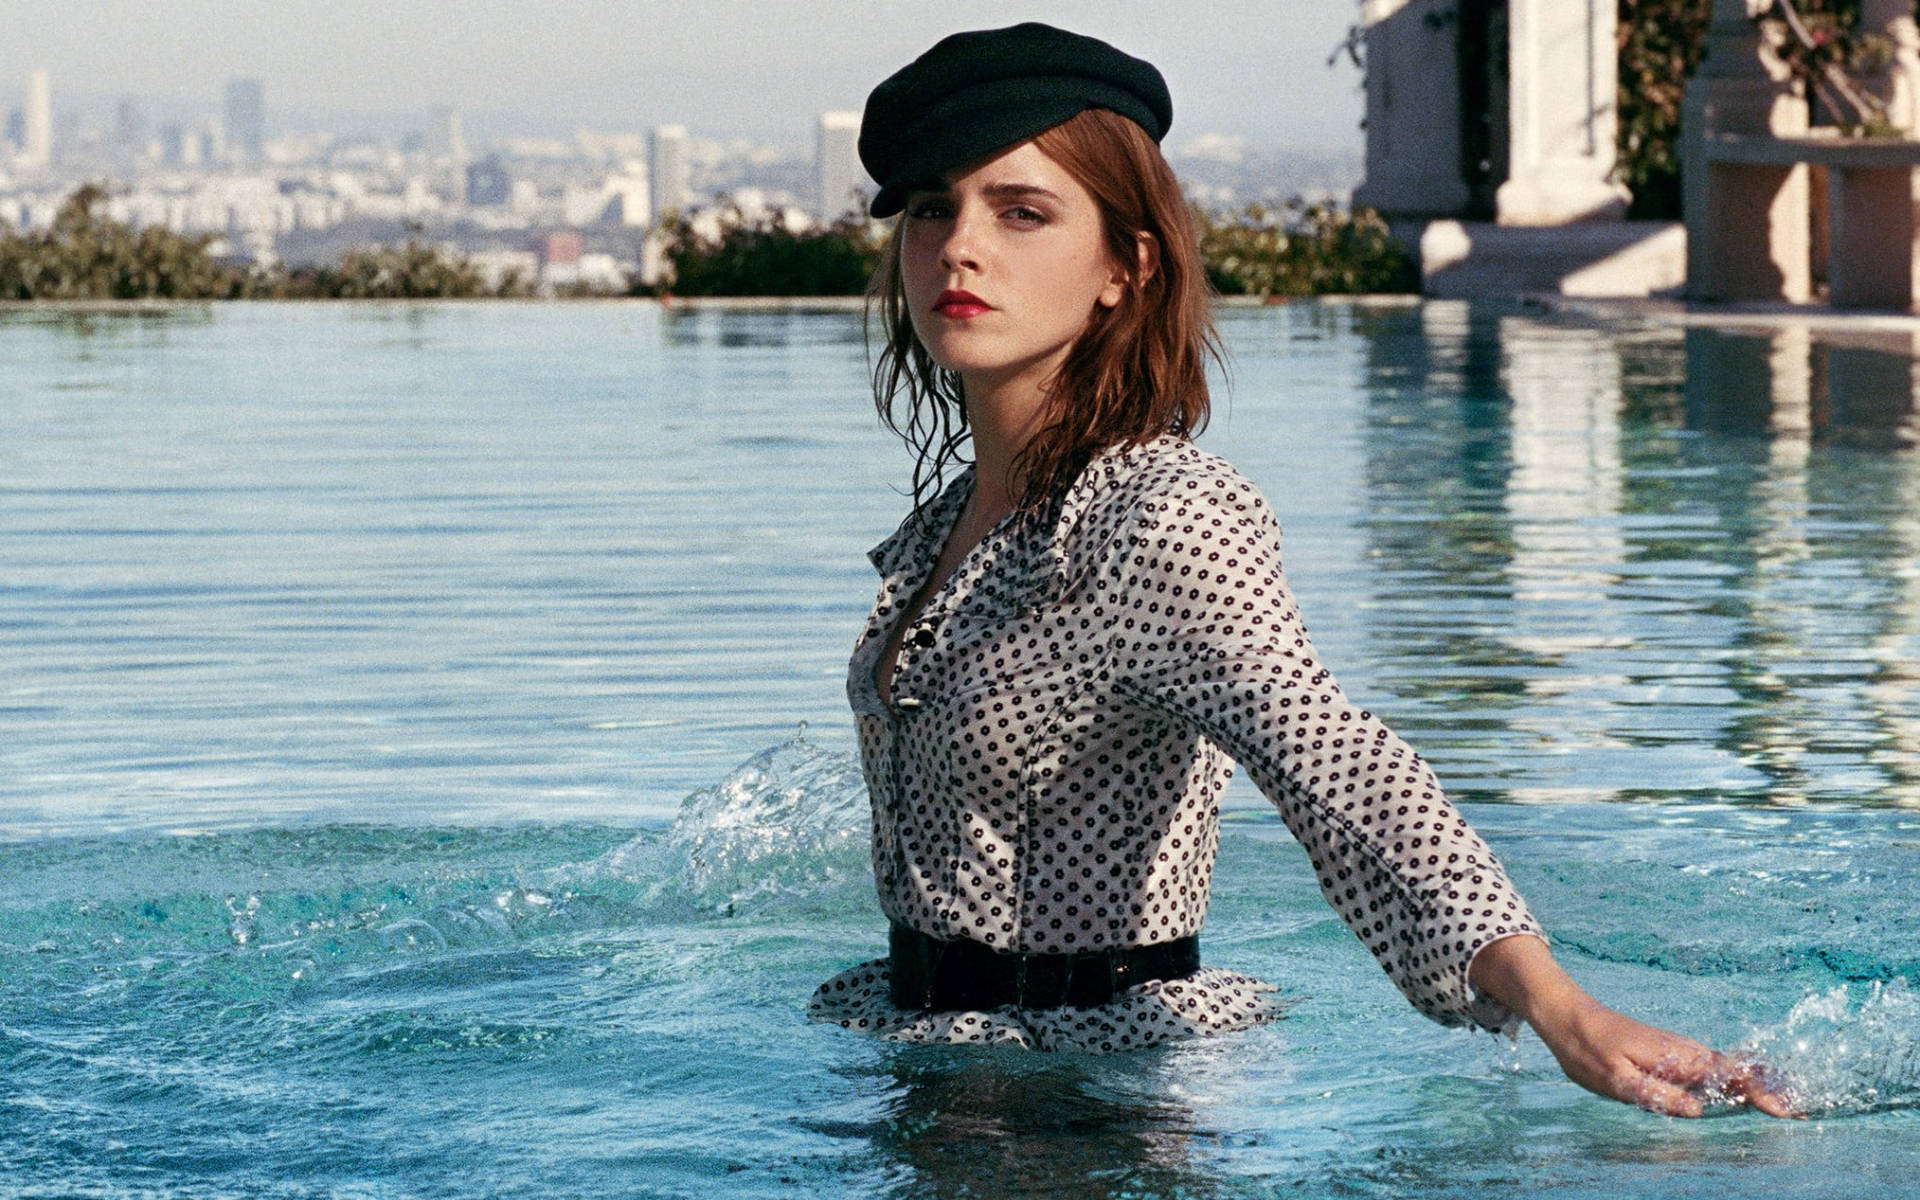 Emma Watson Swimming Pool Photoshoot Wallpaper